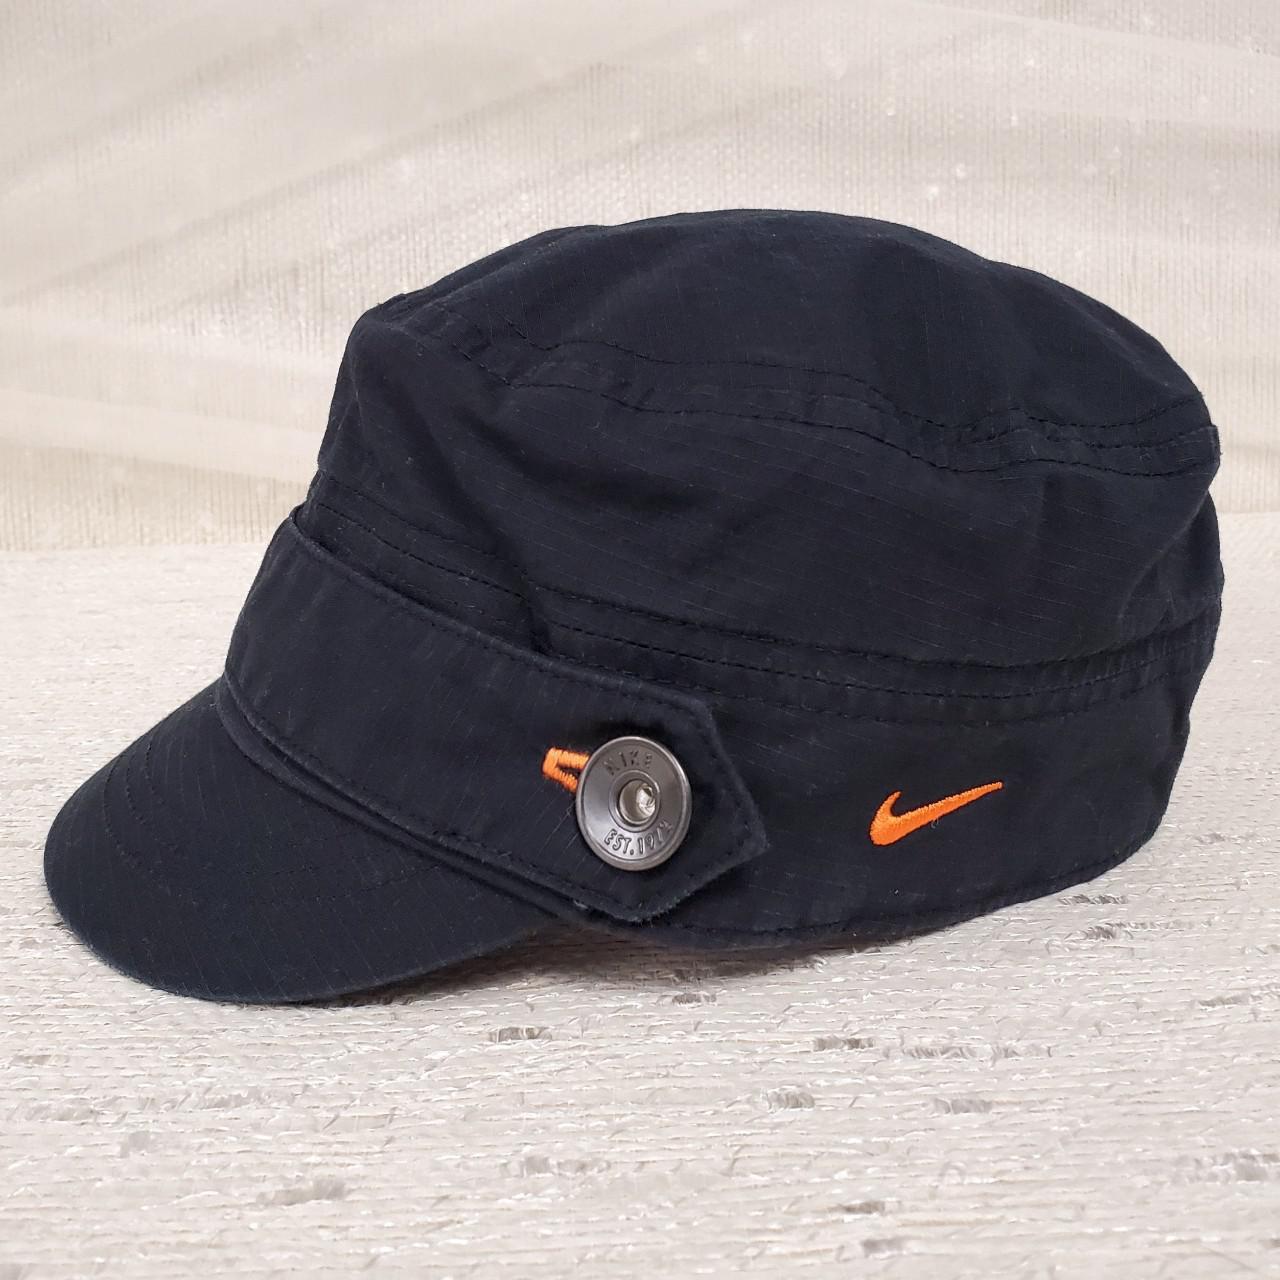 Product Image 1 - Nike black newsboy cap

Nike Golf